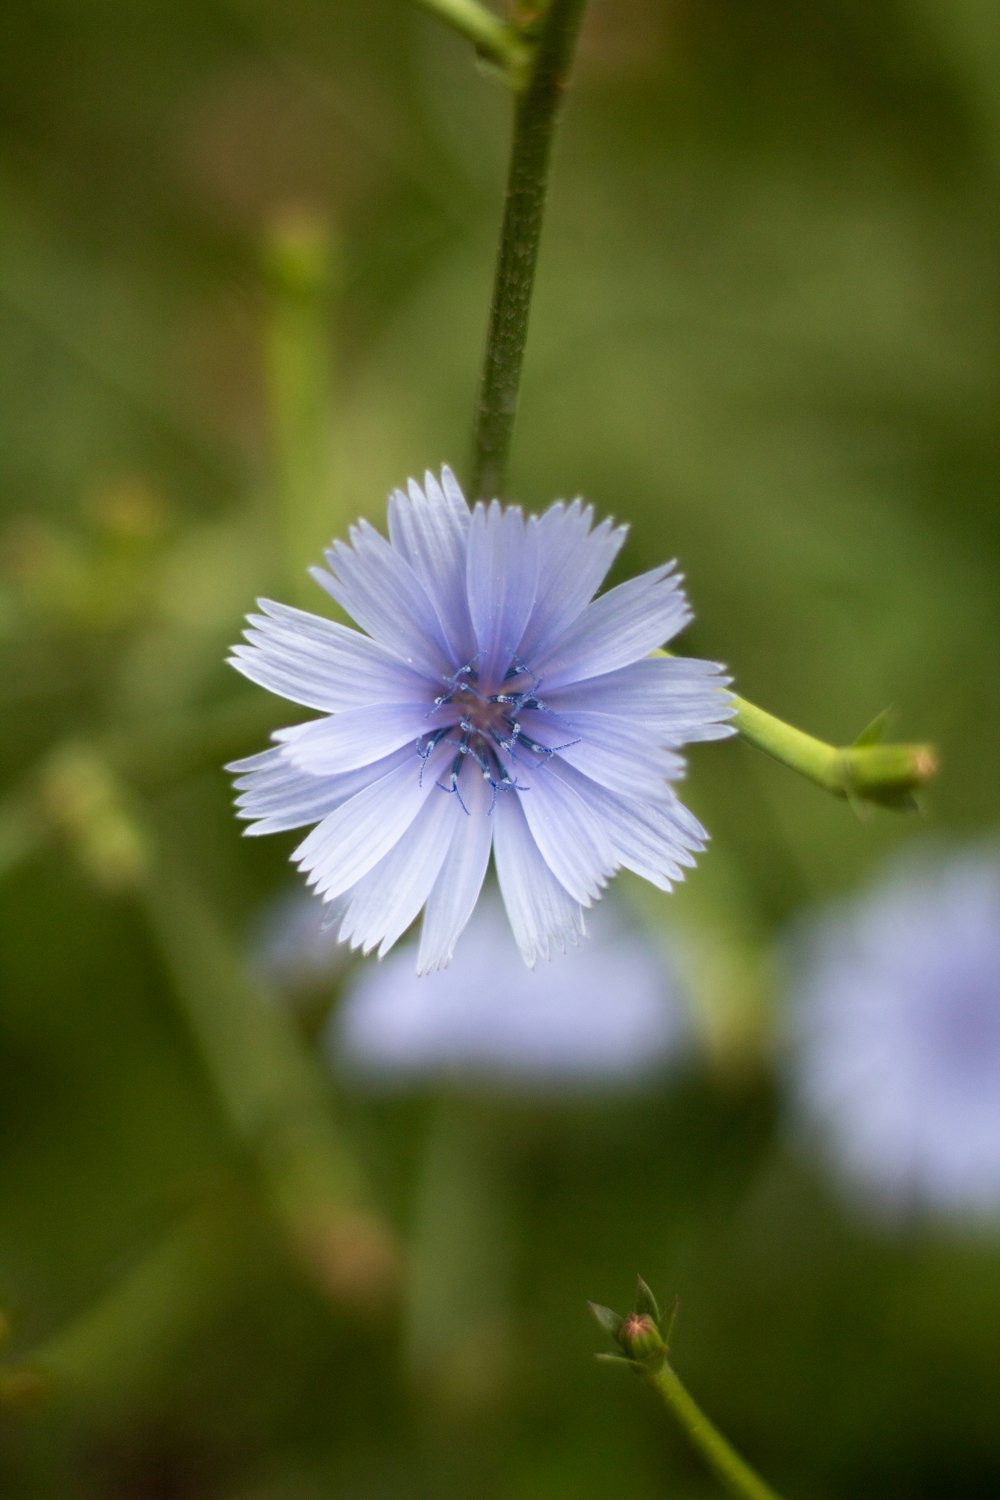 um close up de uma flor azul com fundo desfocado